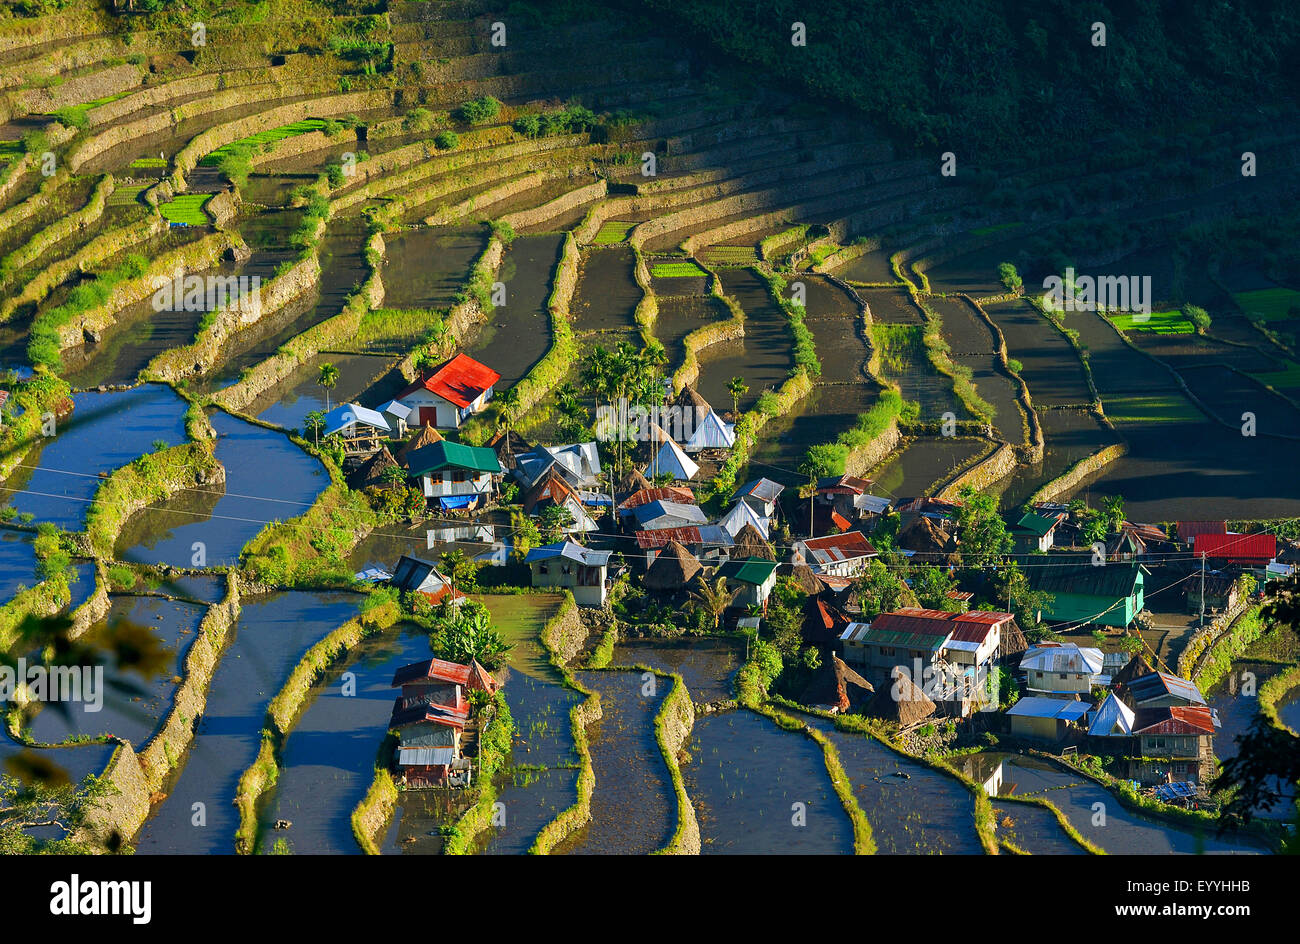 Dans le village en forme d'amphithéâtre Batad rizières en terrasses, Philippines, Luzon, Banaue Banque D'Images